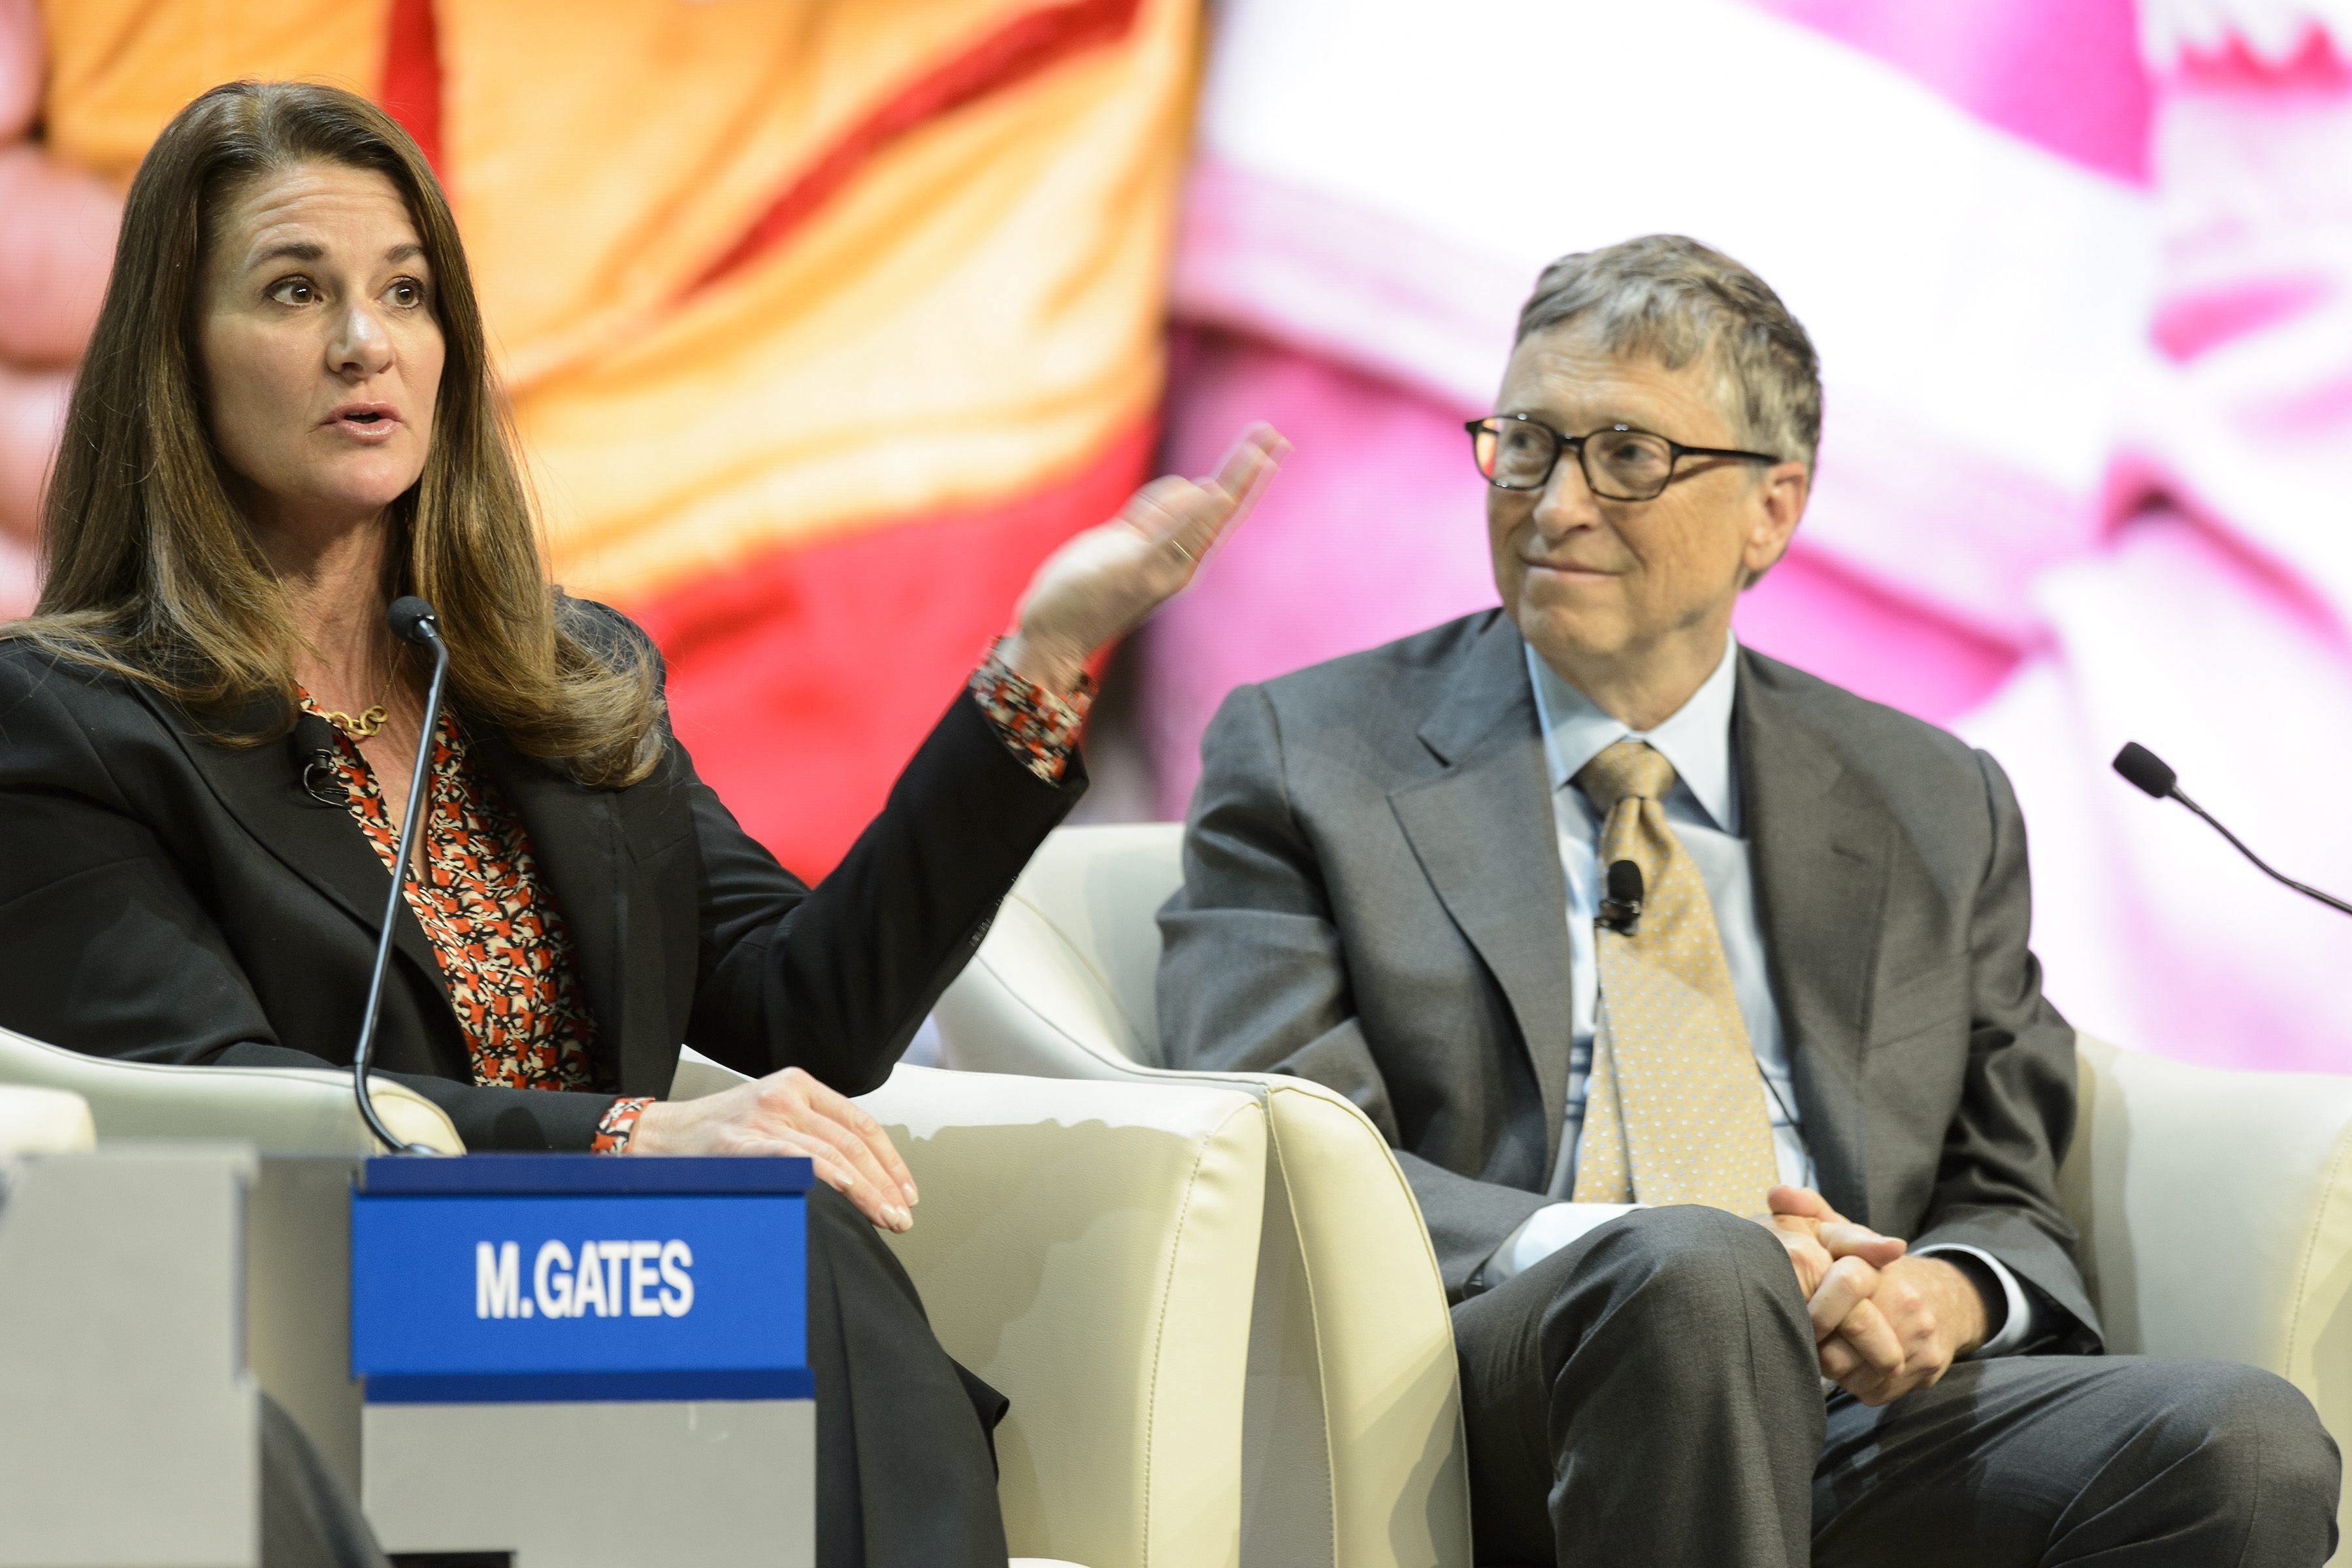 El co-fundador de Microsoft y filántropo Bill Gates (d), participa junto con su mujer Melinda Gates (i), copresidenta junto con él de la Fundación Bill y Melinda Gates, durante una mesa redonda. EFE/LAURENT GILLIERON/Archivo
